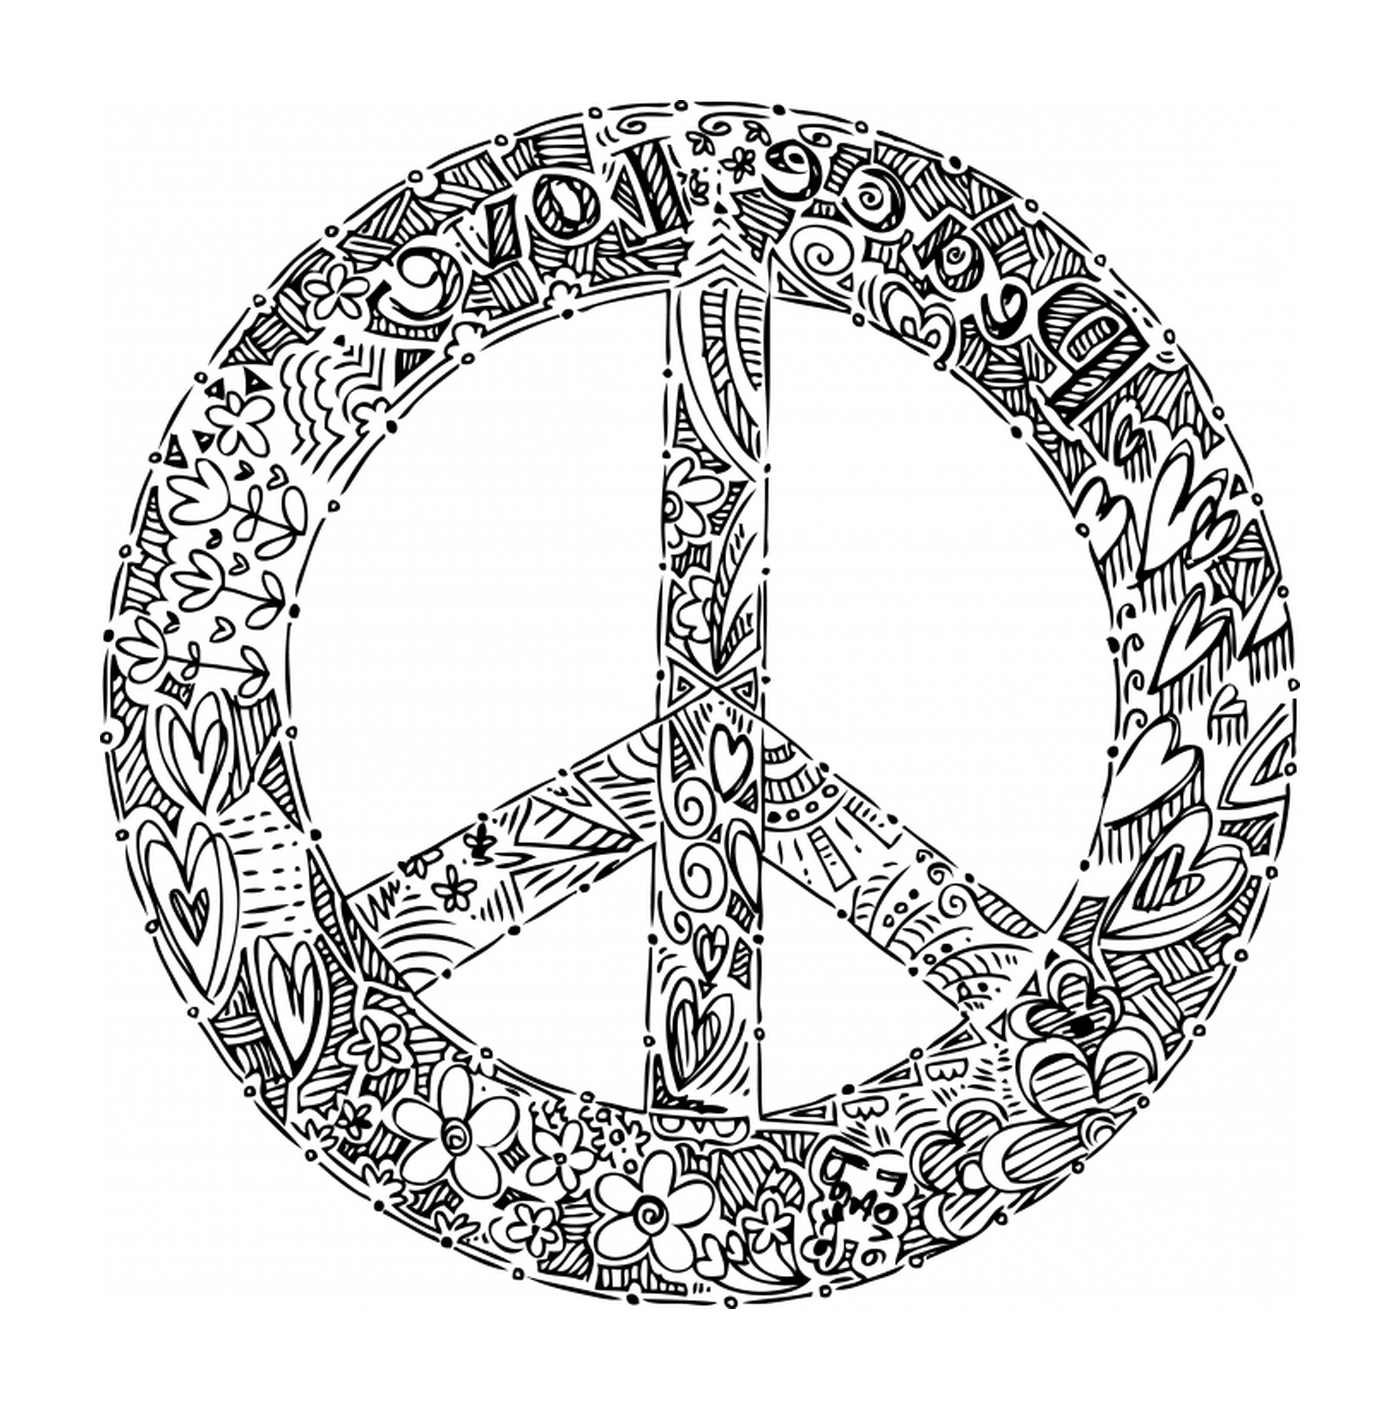  Frieden und Liebe, Logo 